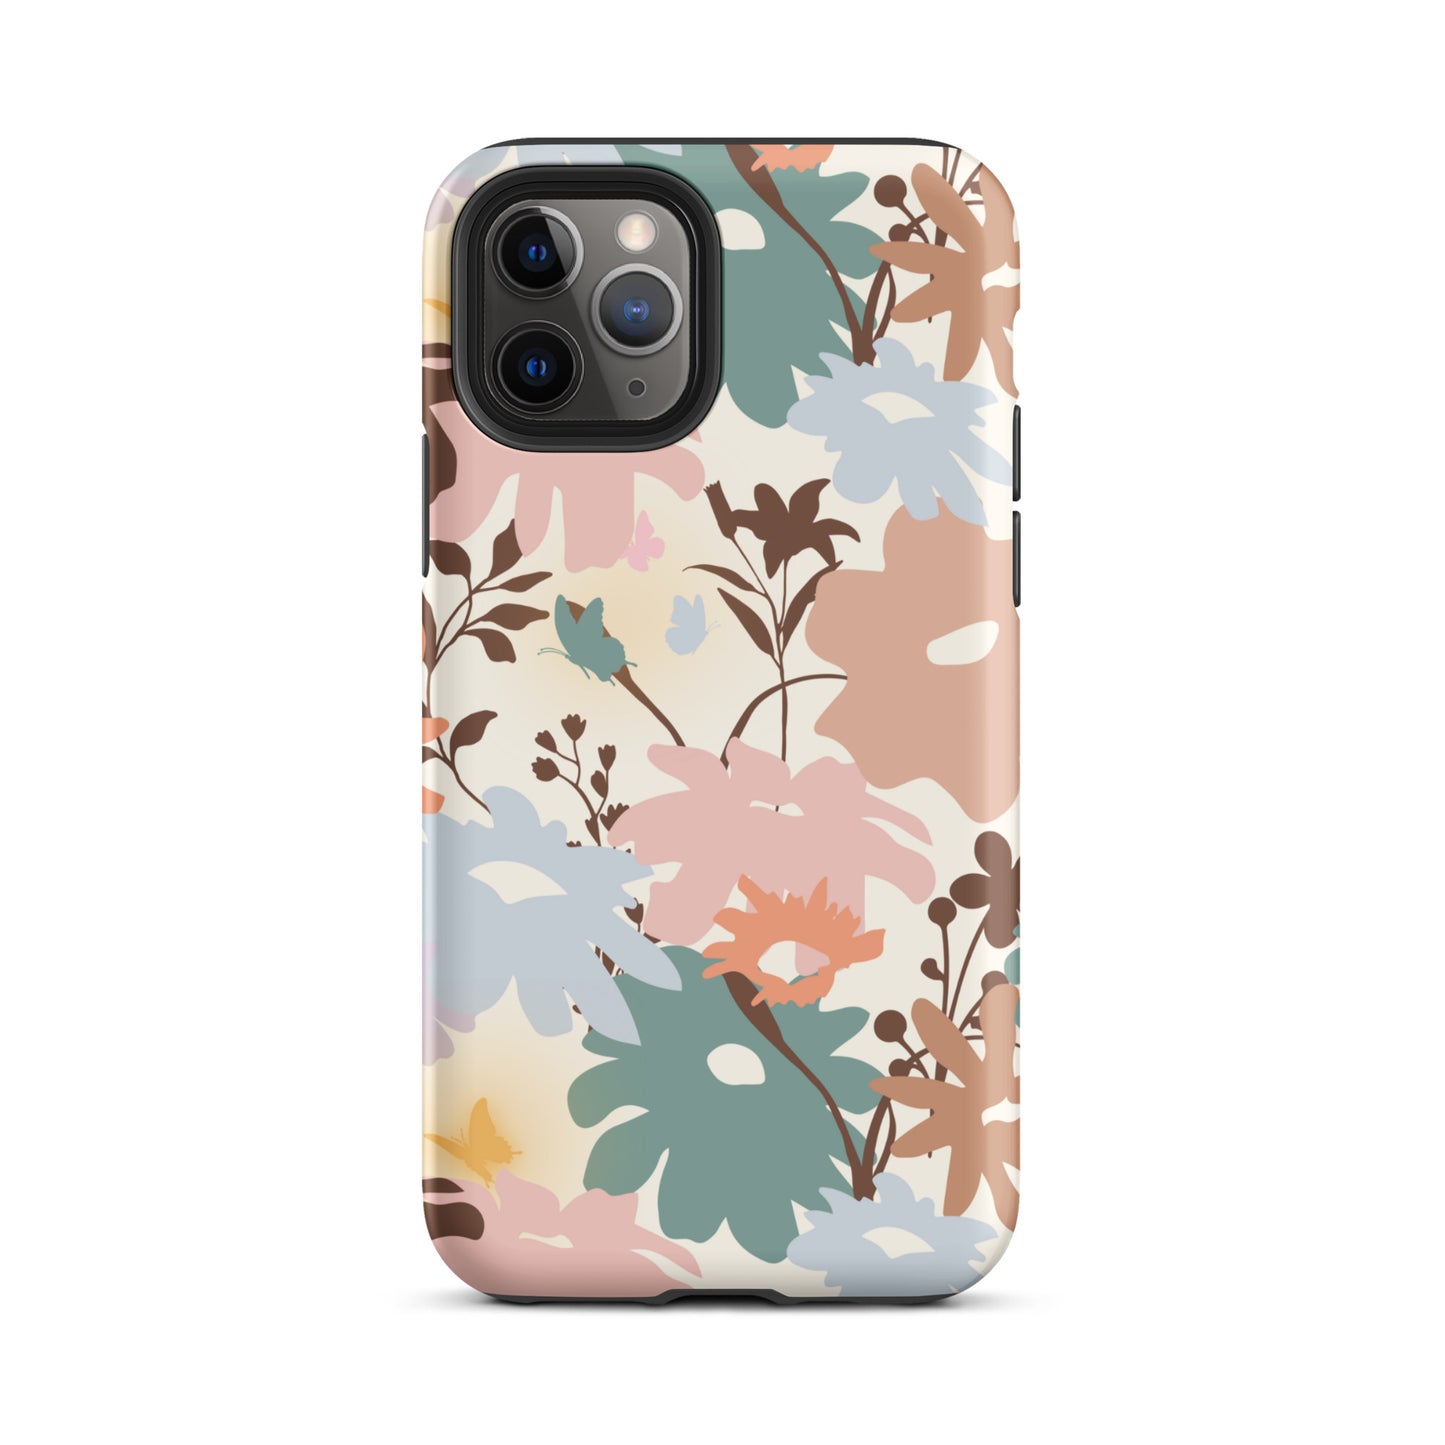 Retro Floral Fusion iPhone Case